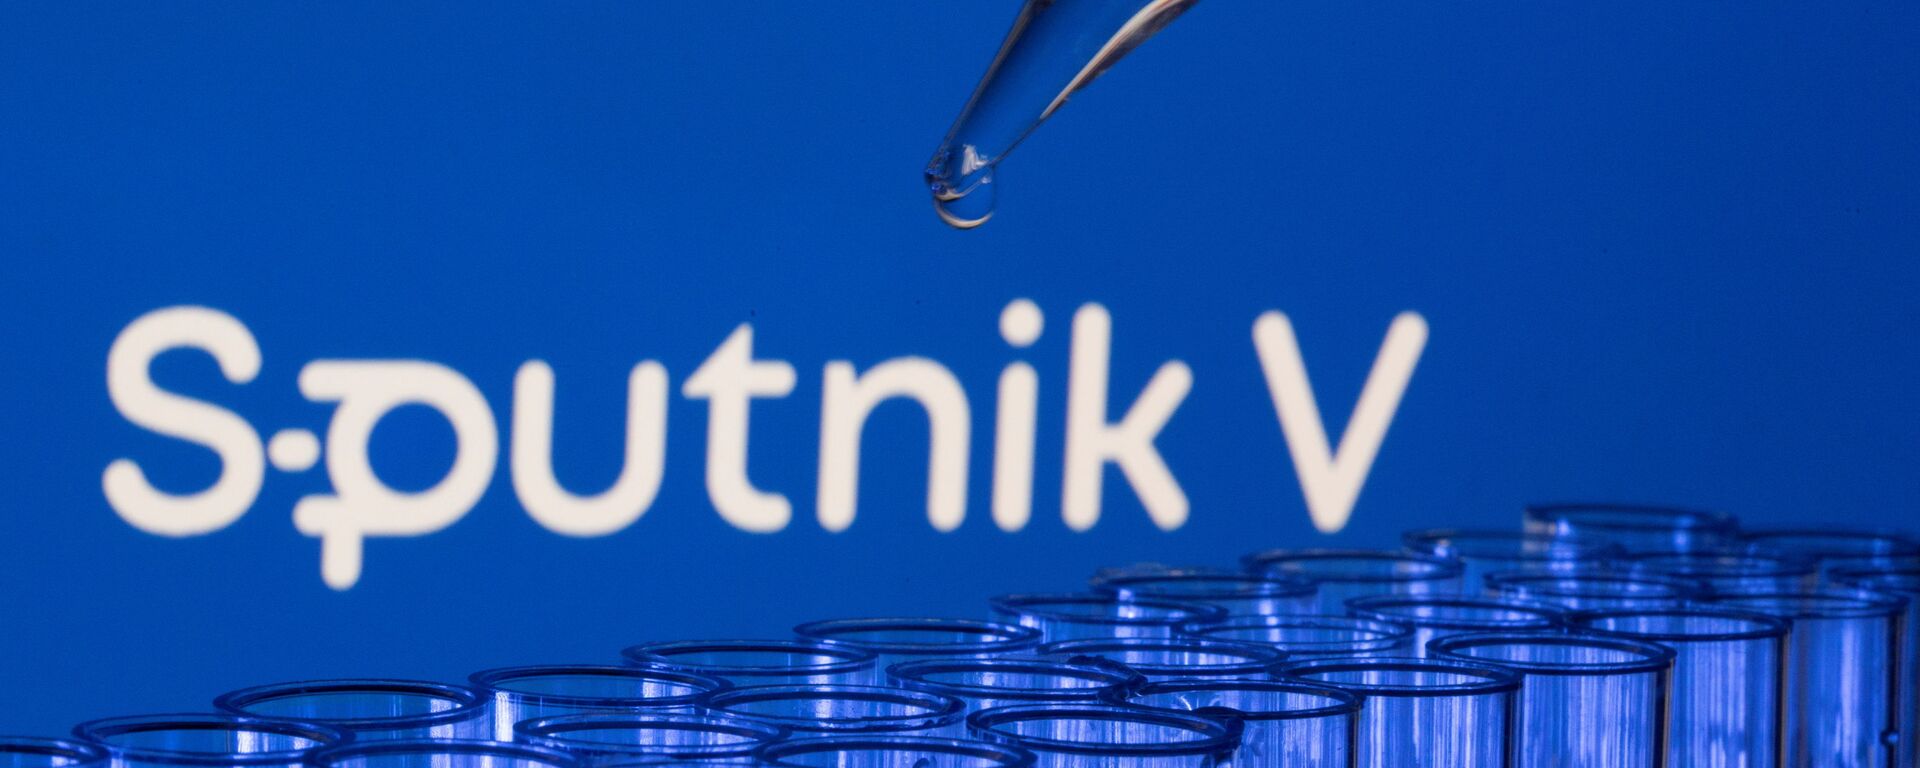 Các ống est được nhìn thấy phía trước logo Sputnik V được hiển thị trong hình minh họa này được chụp, ngày 21 tháng 5 năm 2021. - Sputnik Việt Nam, 1920, 03.12.2021